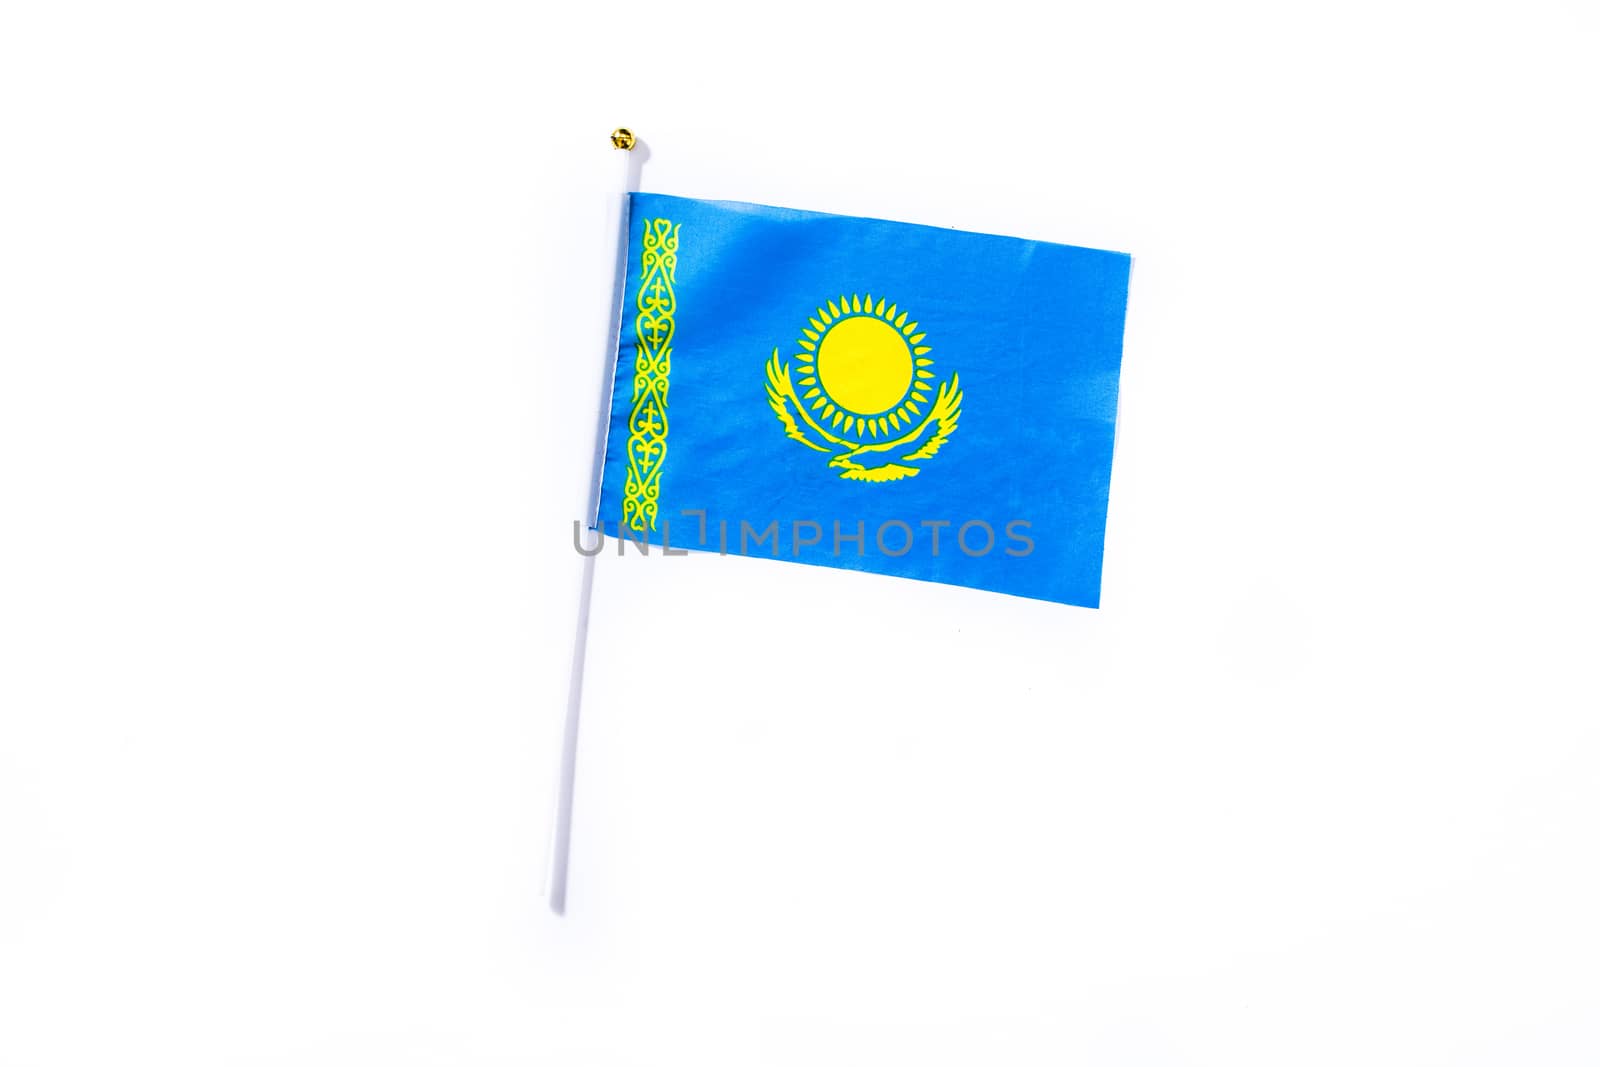 Kazakh flag isolated on white background